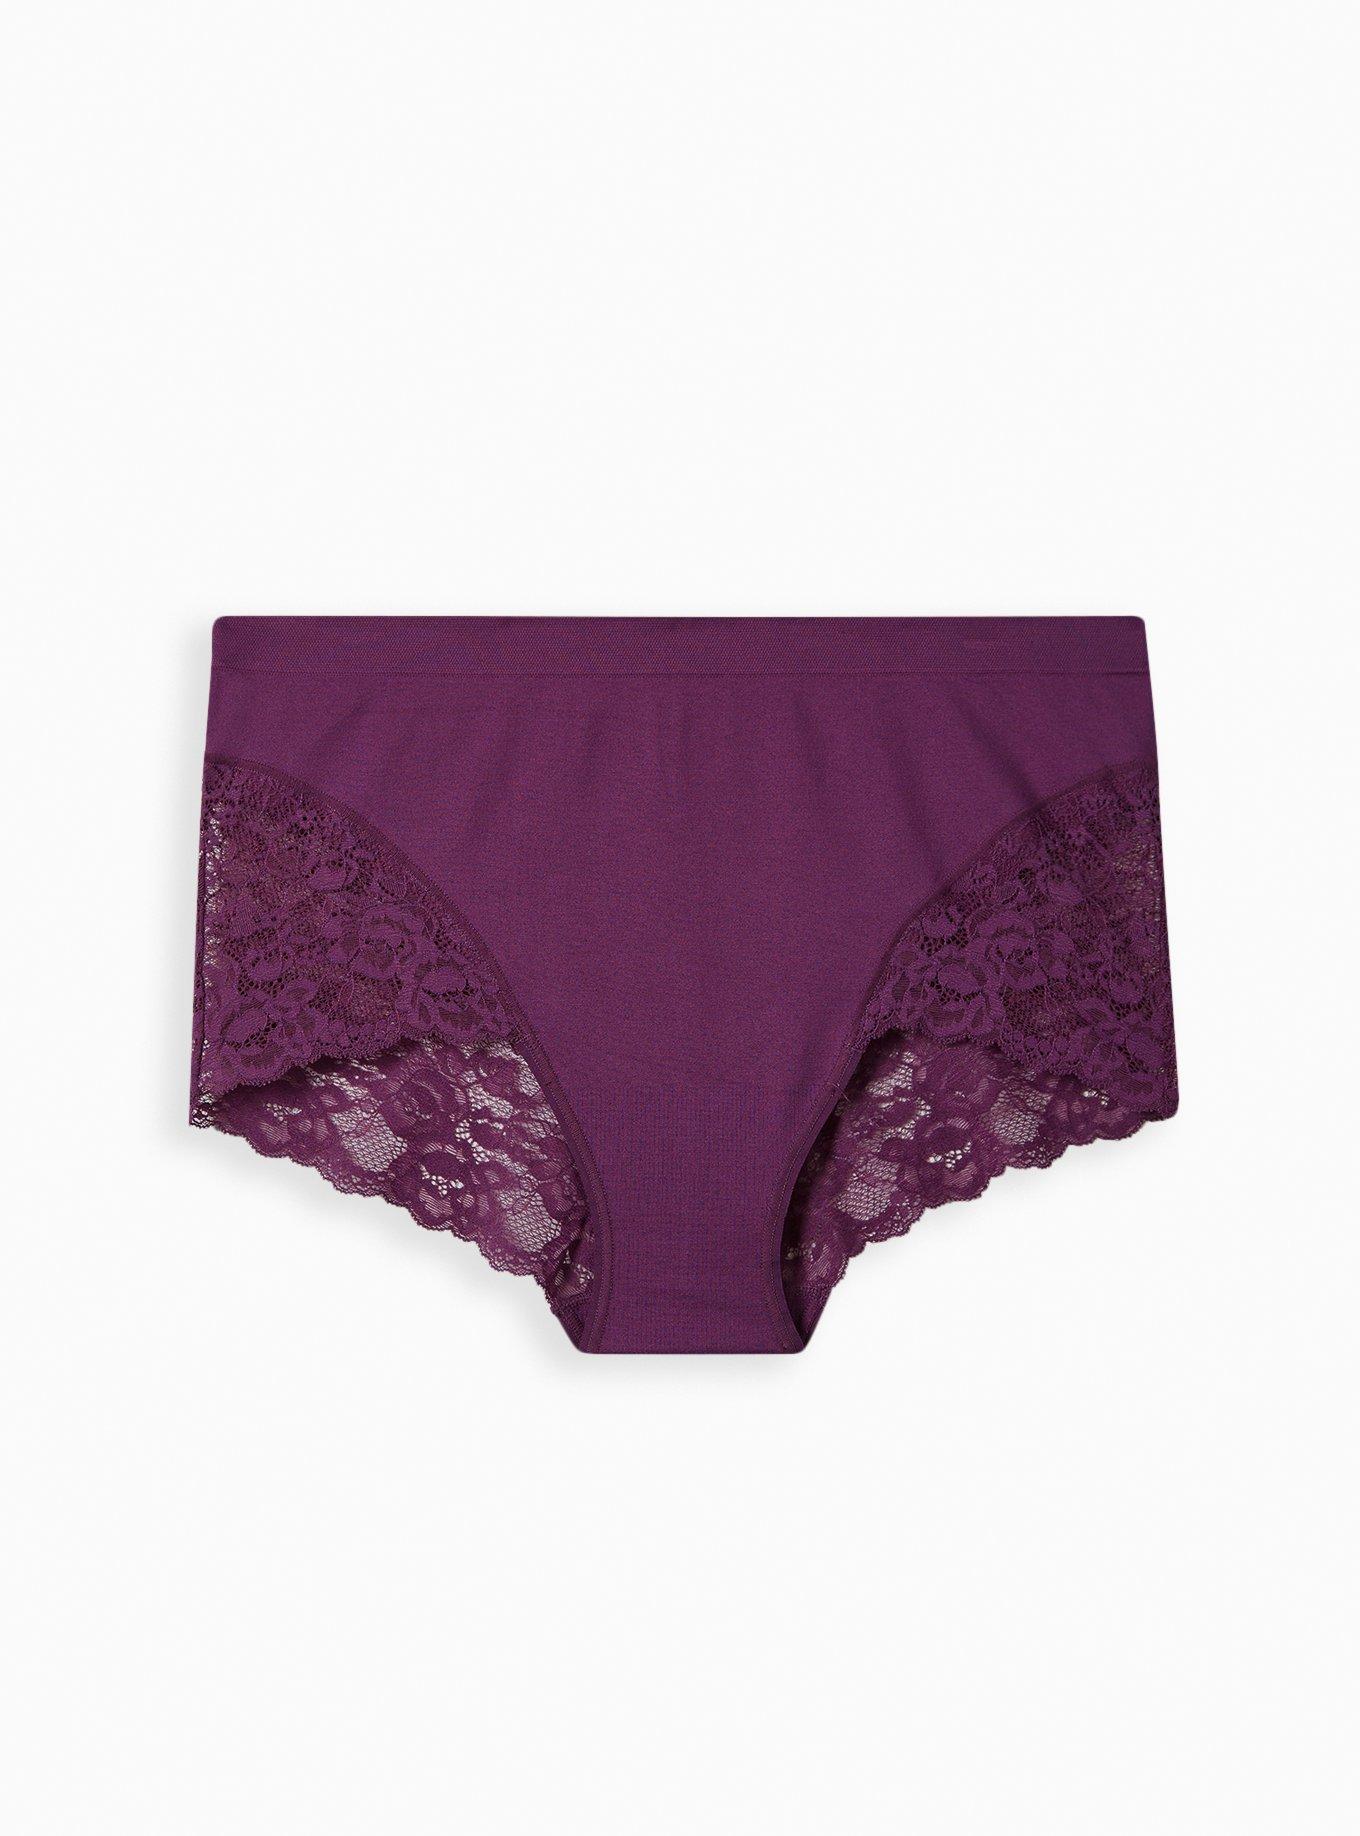 Buy Fun & Flirty Lace-Trim Cheeky Panty - Order Panties online